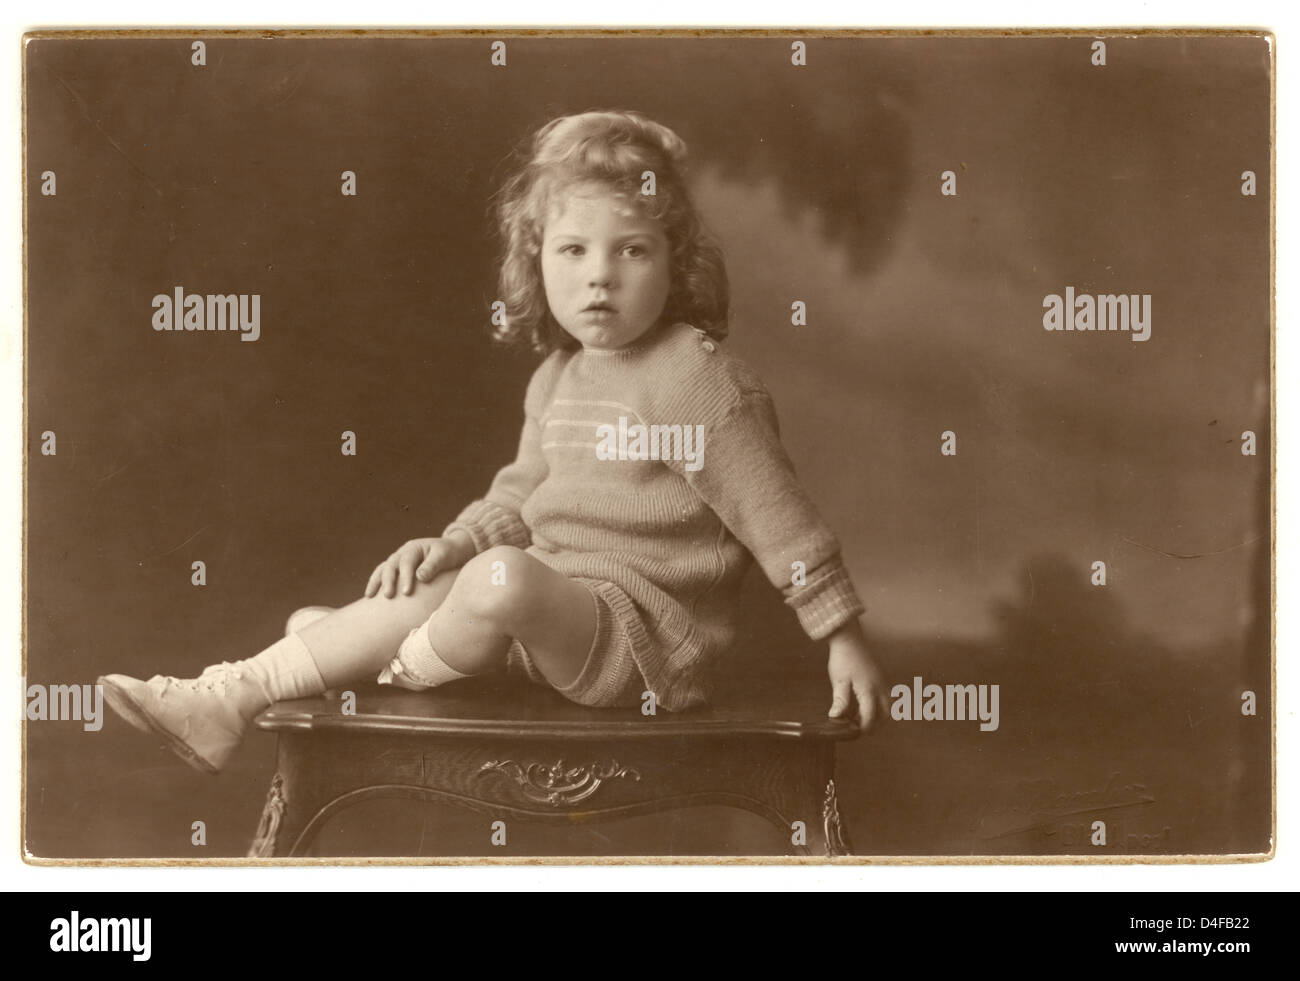 1920s child immagini e fotografie stock ad alta risoluzione - Alamy